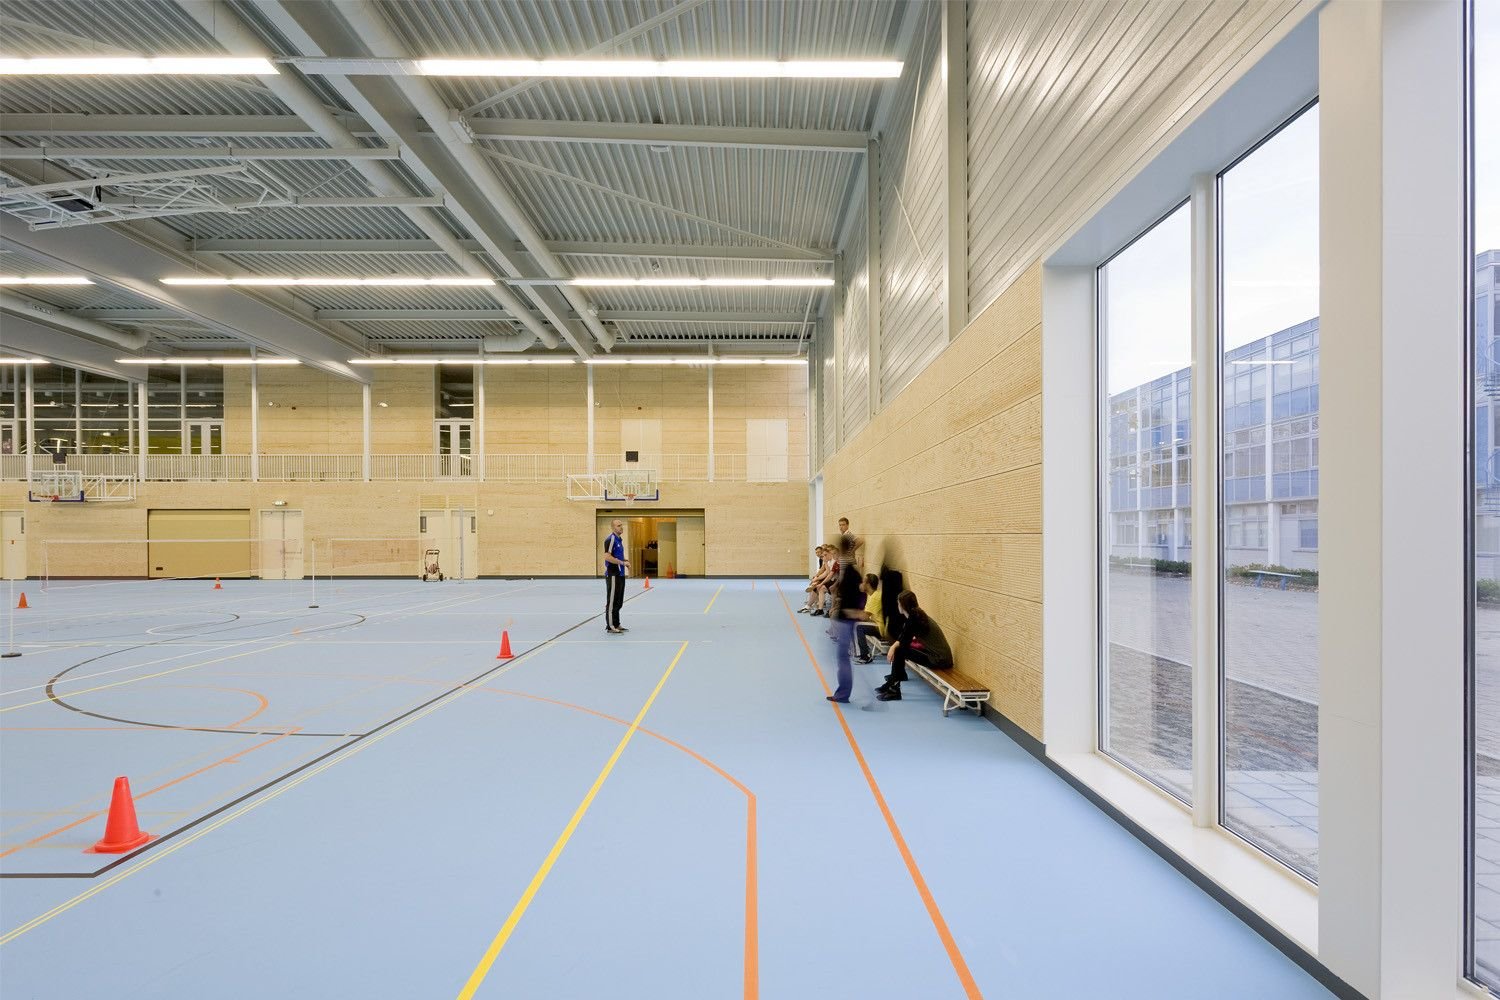 Современный спортзал в школе фото дизайн интерьера